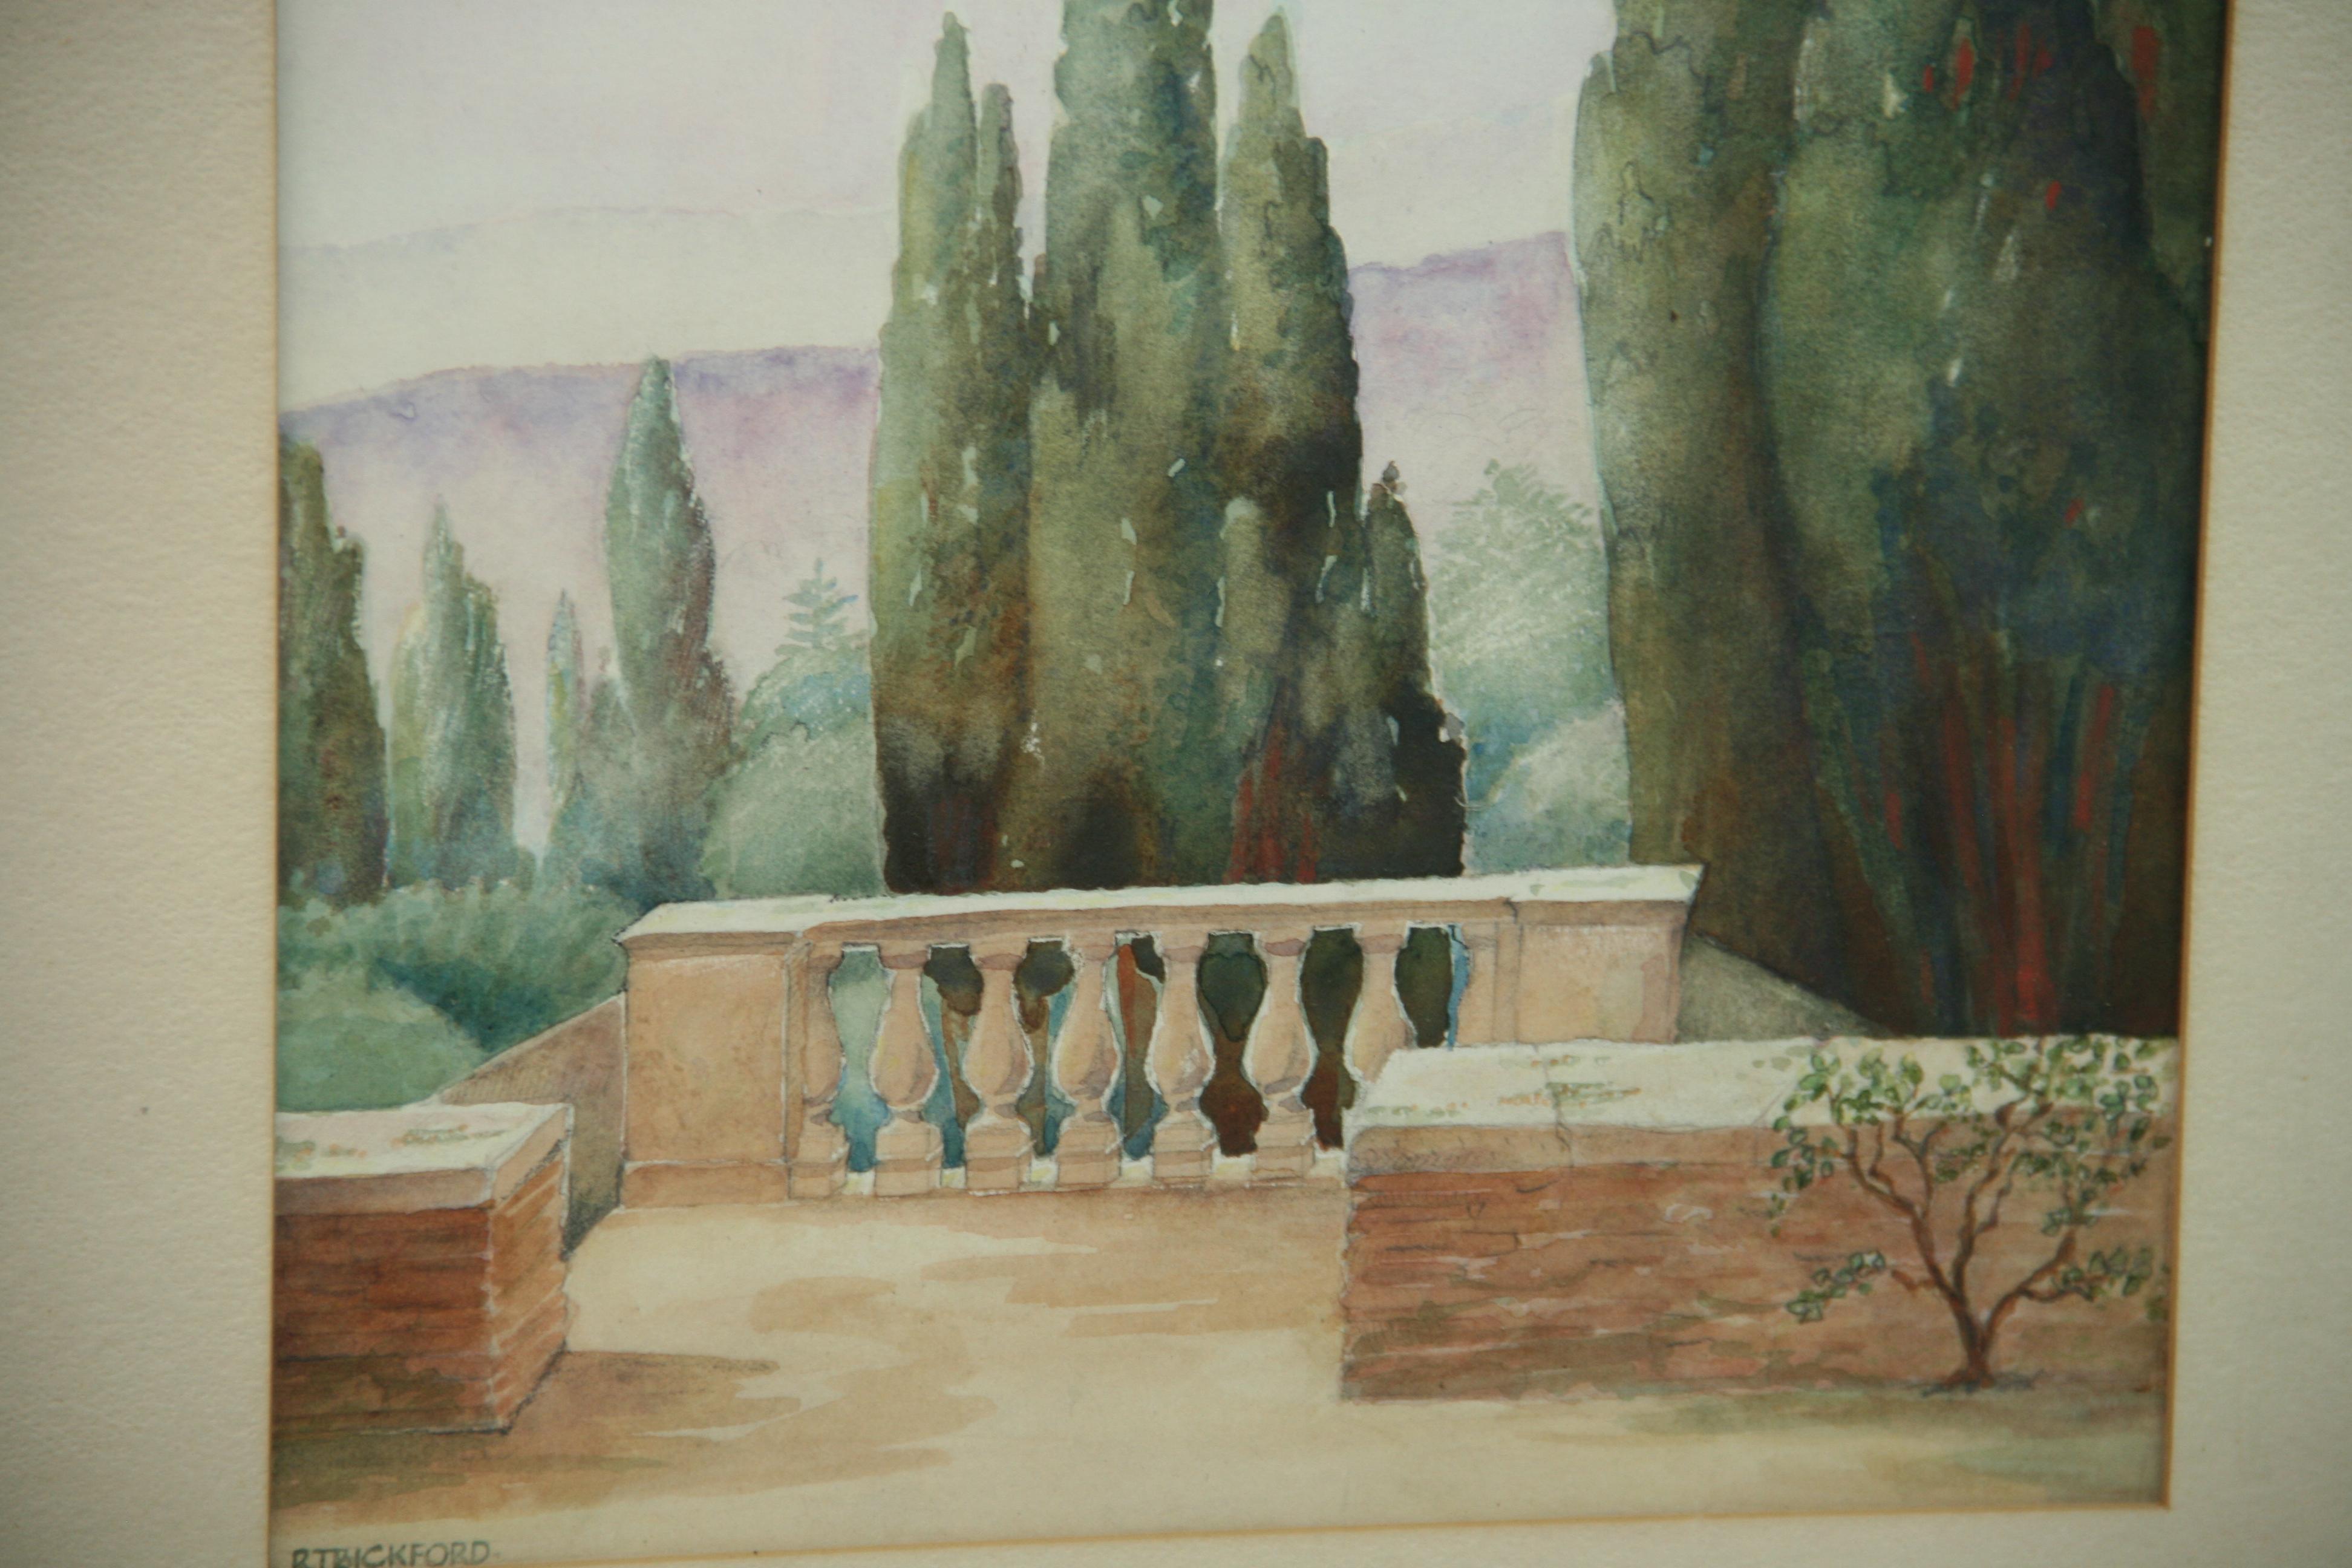 Antike toskanische Terrace-Landschaft von R T Bickford – Art von Unknown